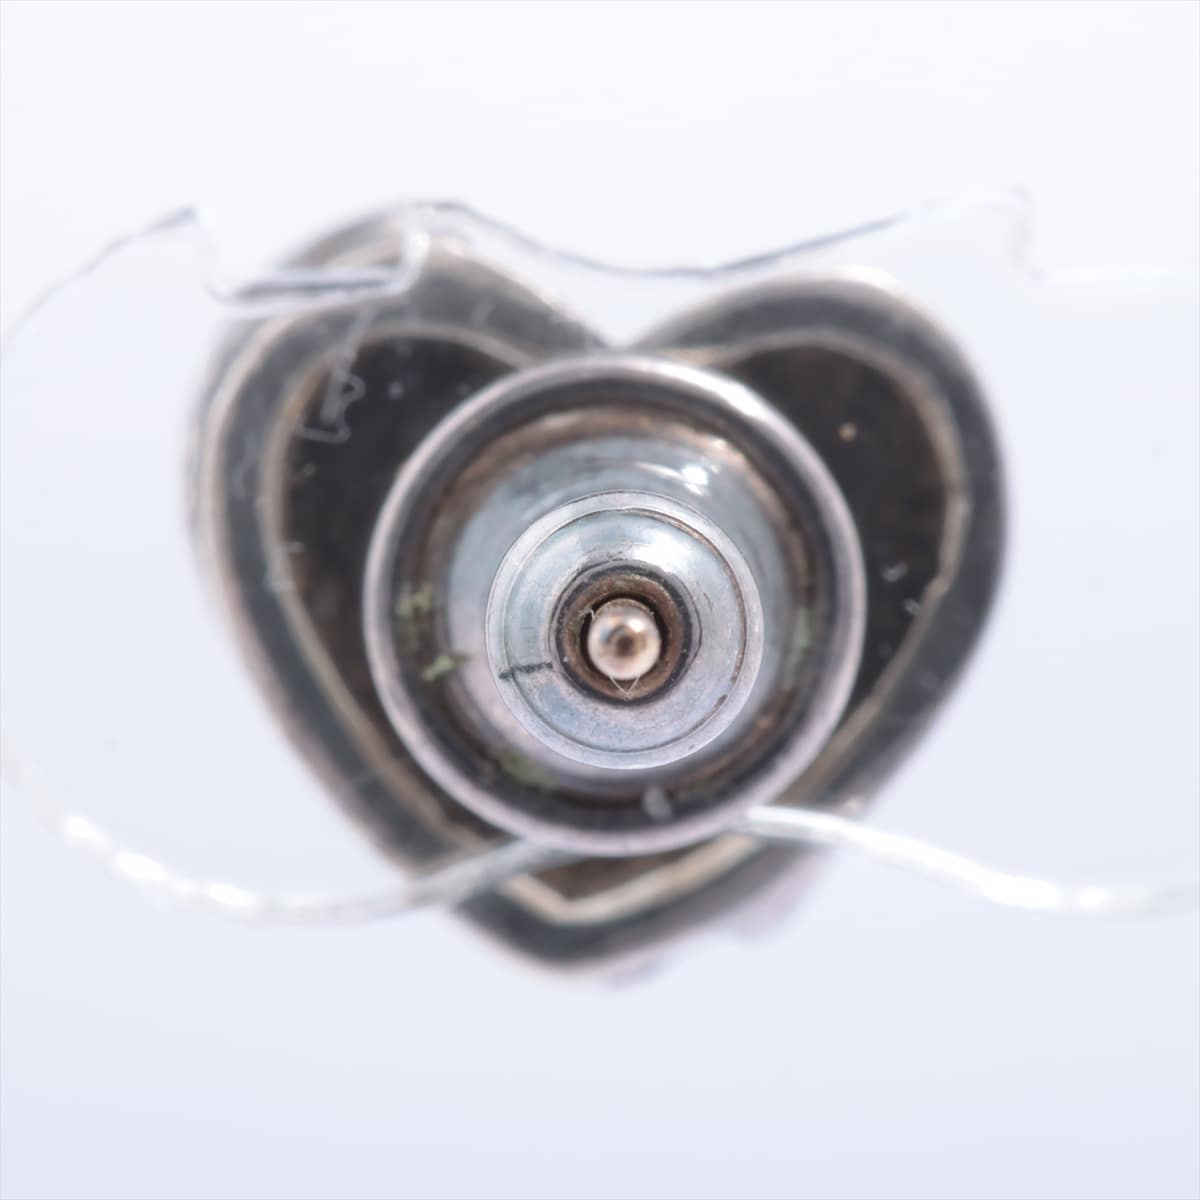 Chrome Hearts Heart Stud Earrings Piercing jewelry (for one ear) 925×14K 1.3g